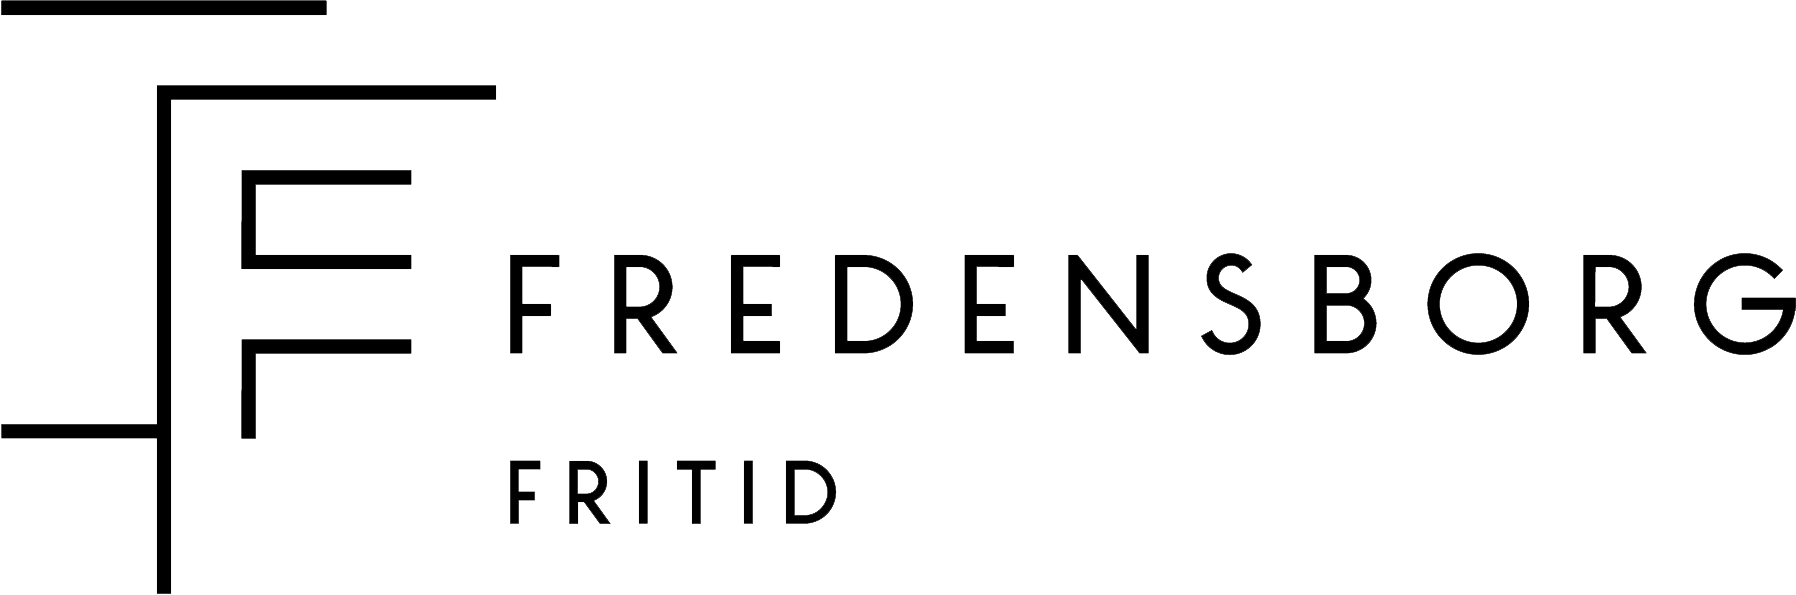 Logoen for Fredensborg Fritid Kragerø.